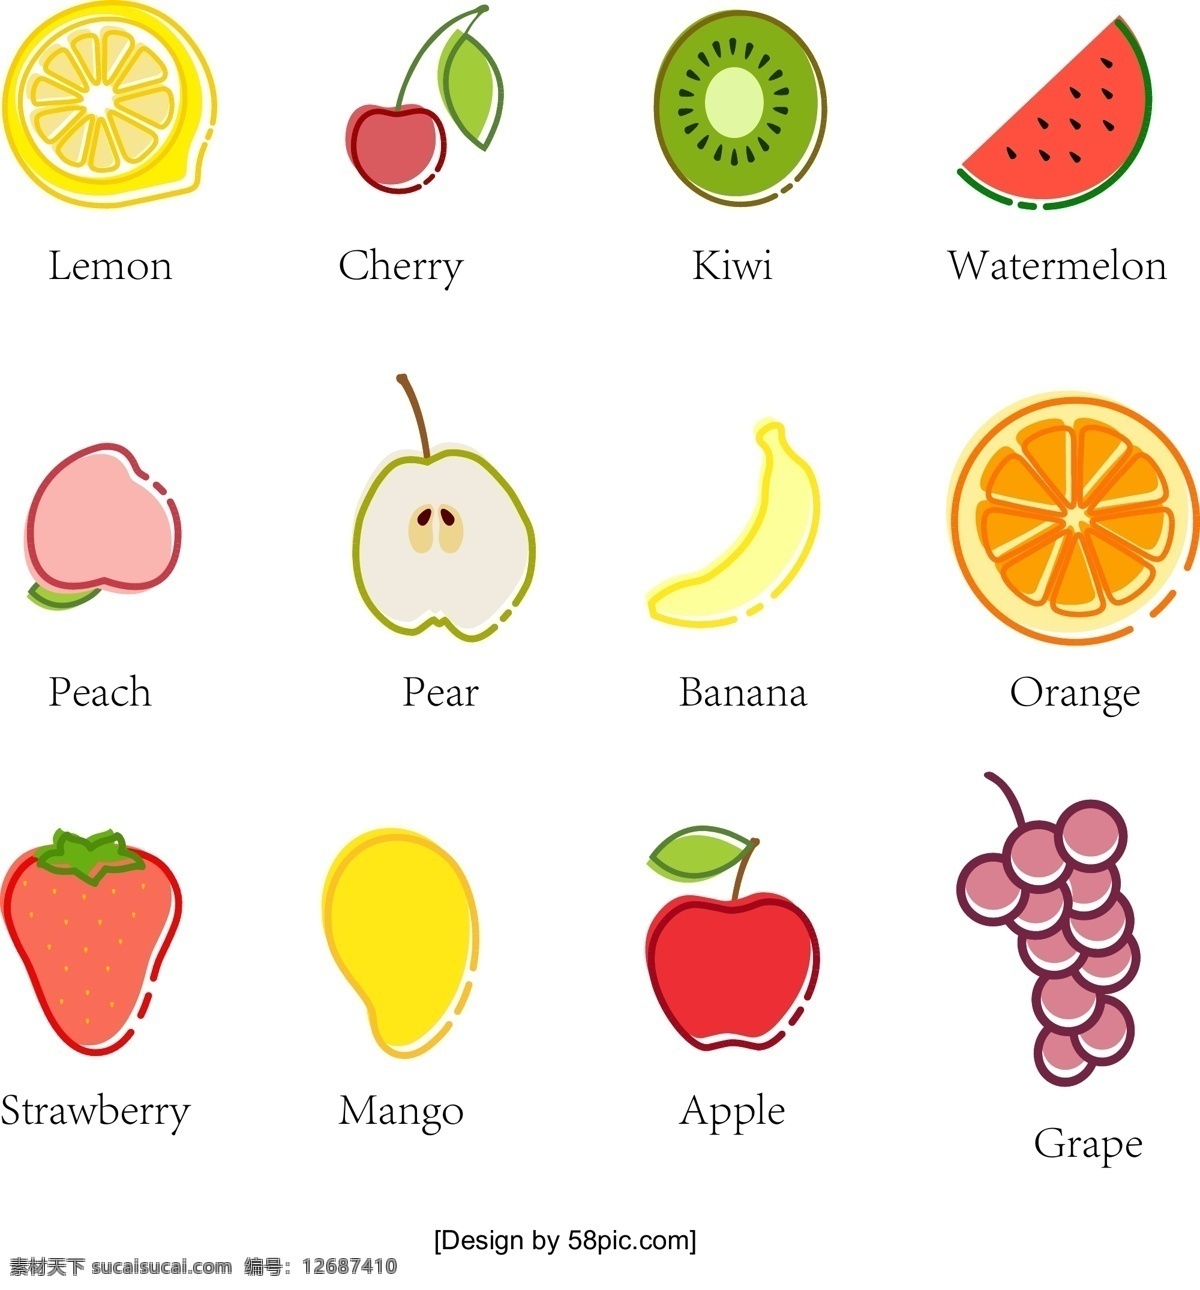 创意 扁平化 水果 图标 柠檬 橙子 草莓 苹果 葡萄 水果图标 樱桃 猕猴桃 西瓜 桃子 桃 梨 香蕉 芒果 扁平化图标